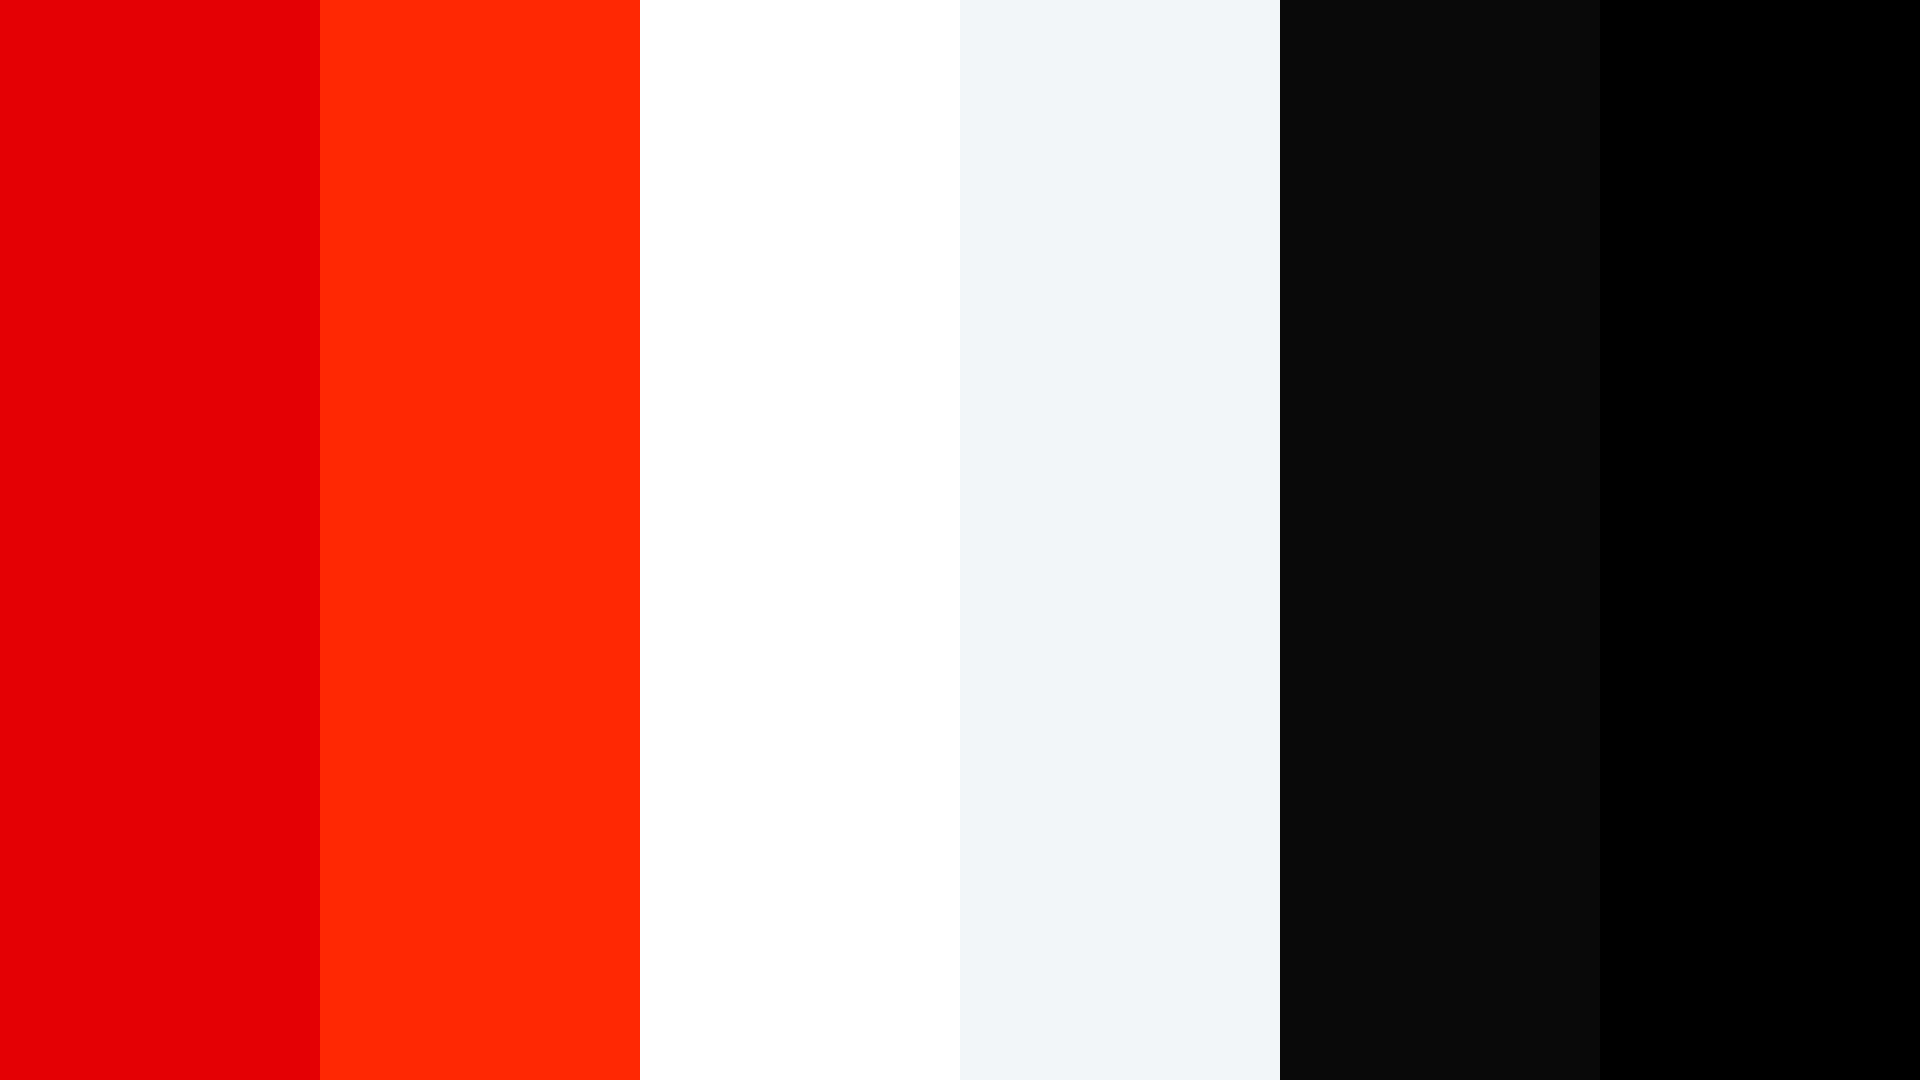 Unllamativo Fondo De Pantalla Abstracto En Rojo, Blanco Y Negro. Fondo de pantalla